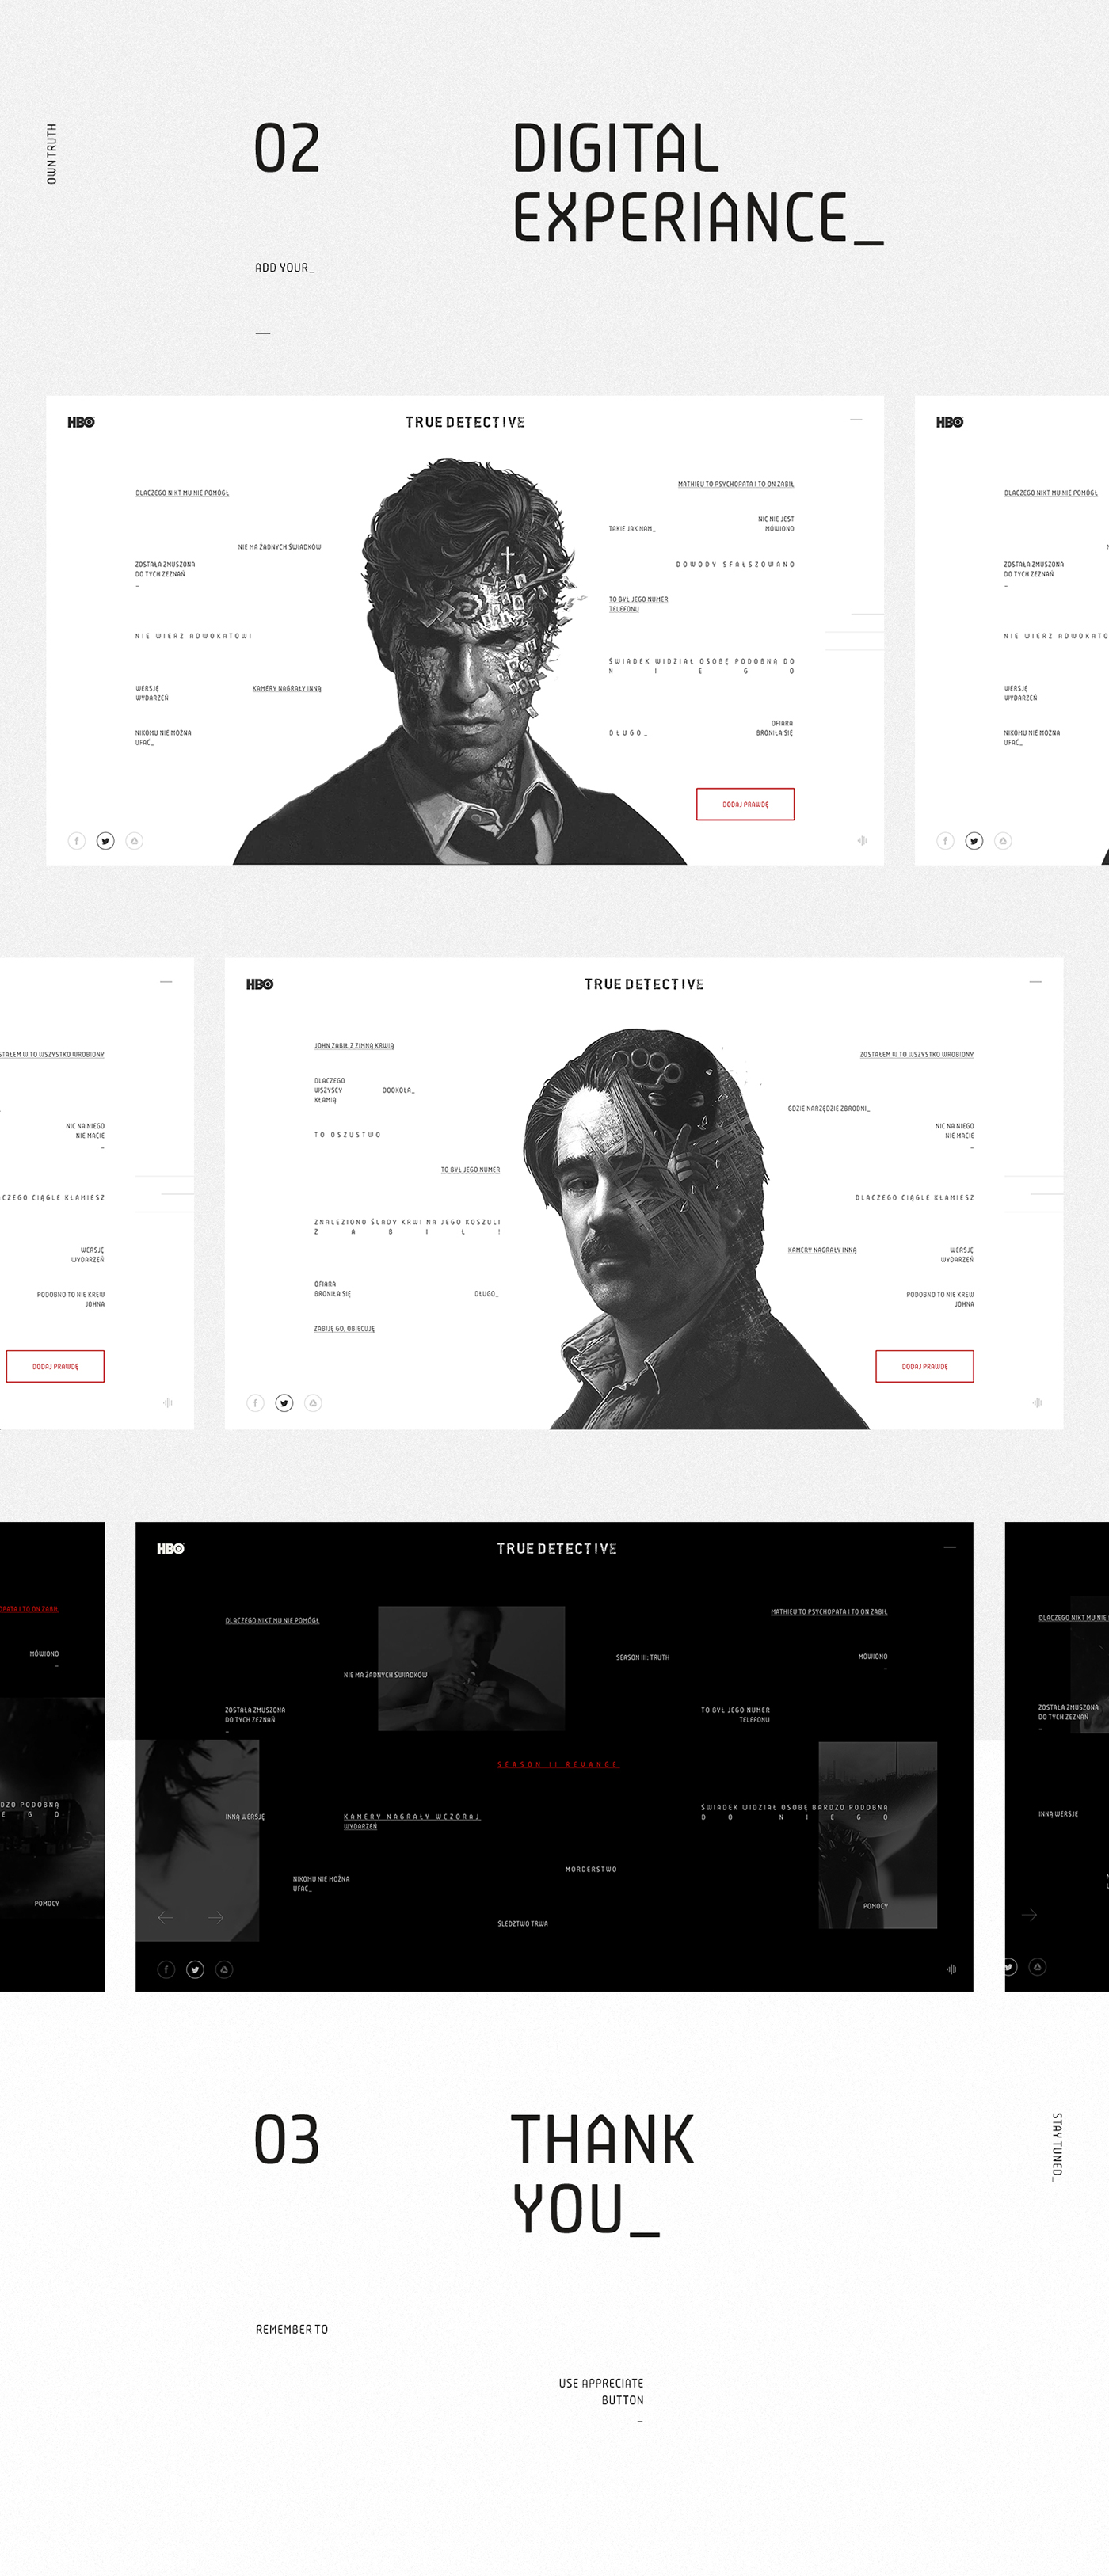 Webdesign True Detective  włodarczyk design Website art direction  bartosz włodarczyk